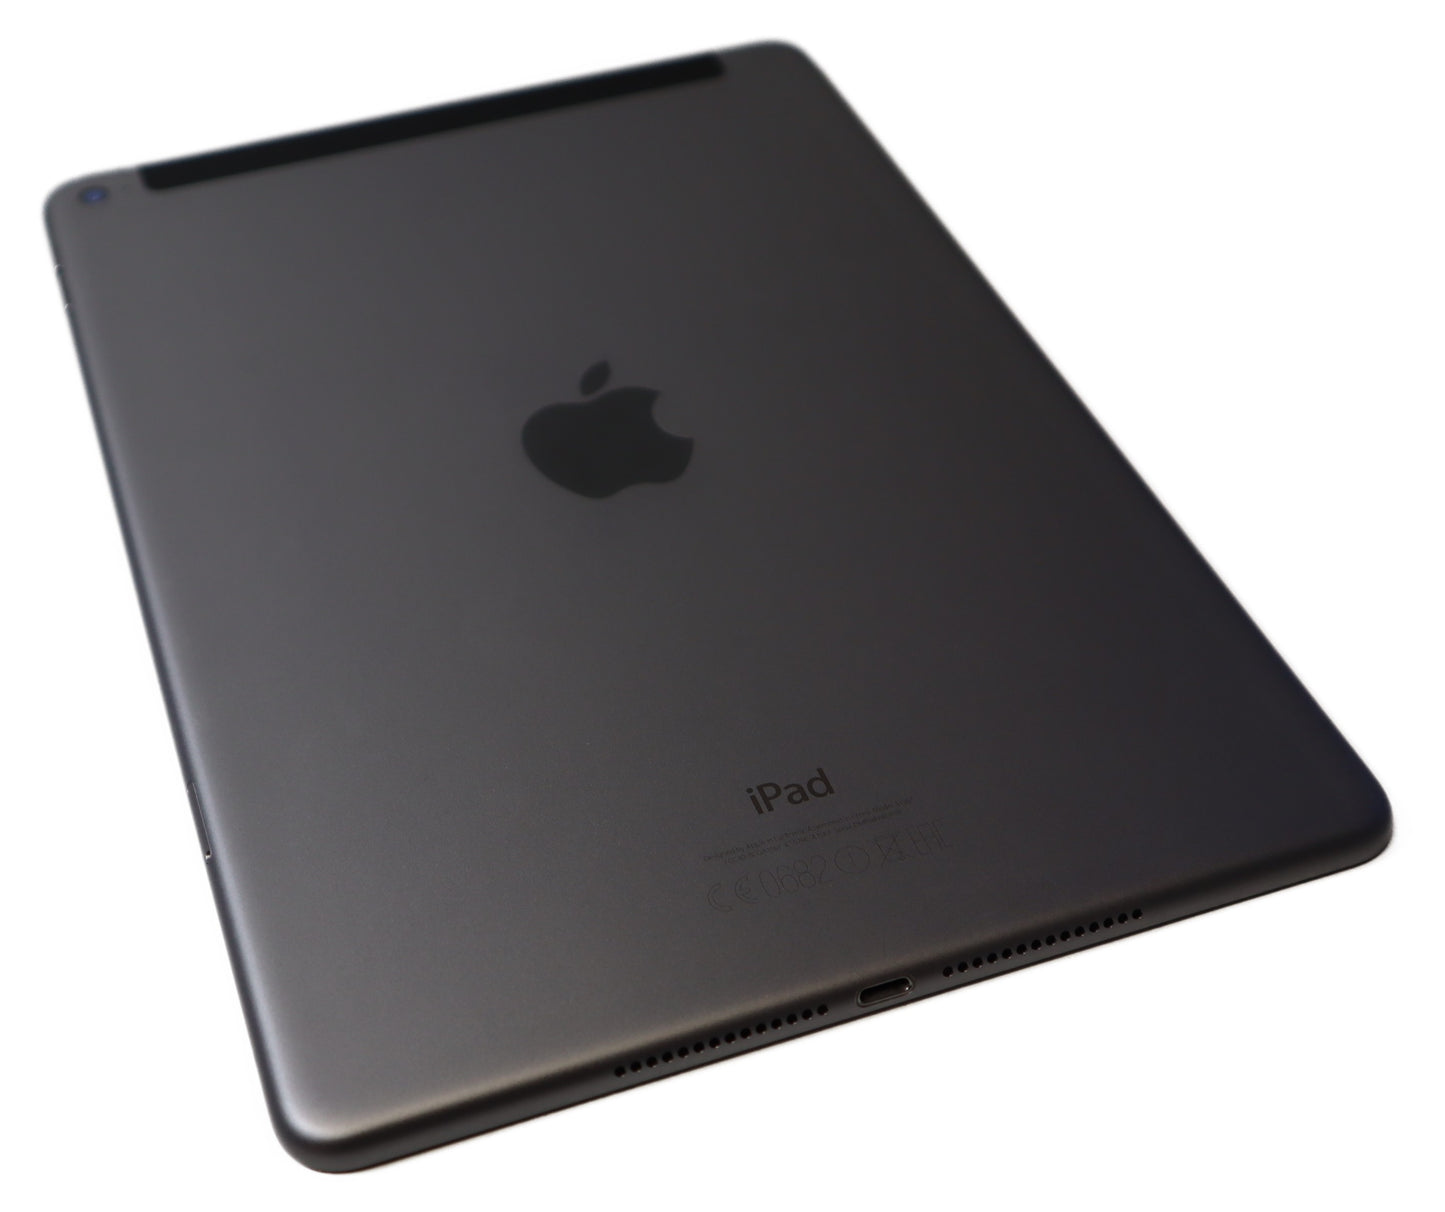 Apple iPad Air 2 Wi-Fi + Cellular 128 GB Spacegrau SDMPS8FKBG5ZP